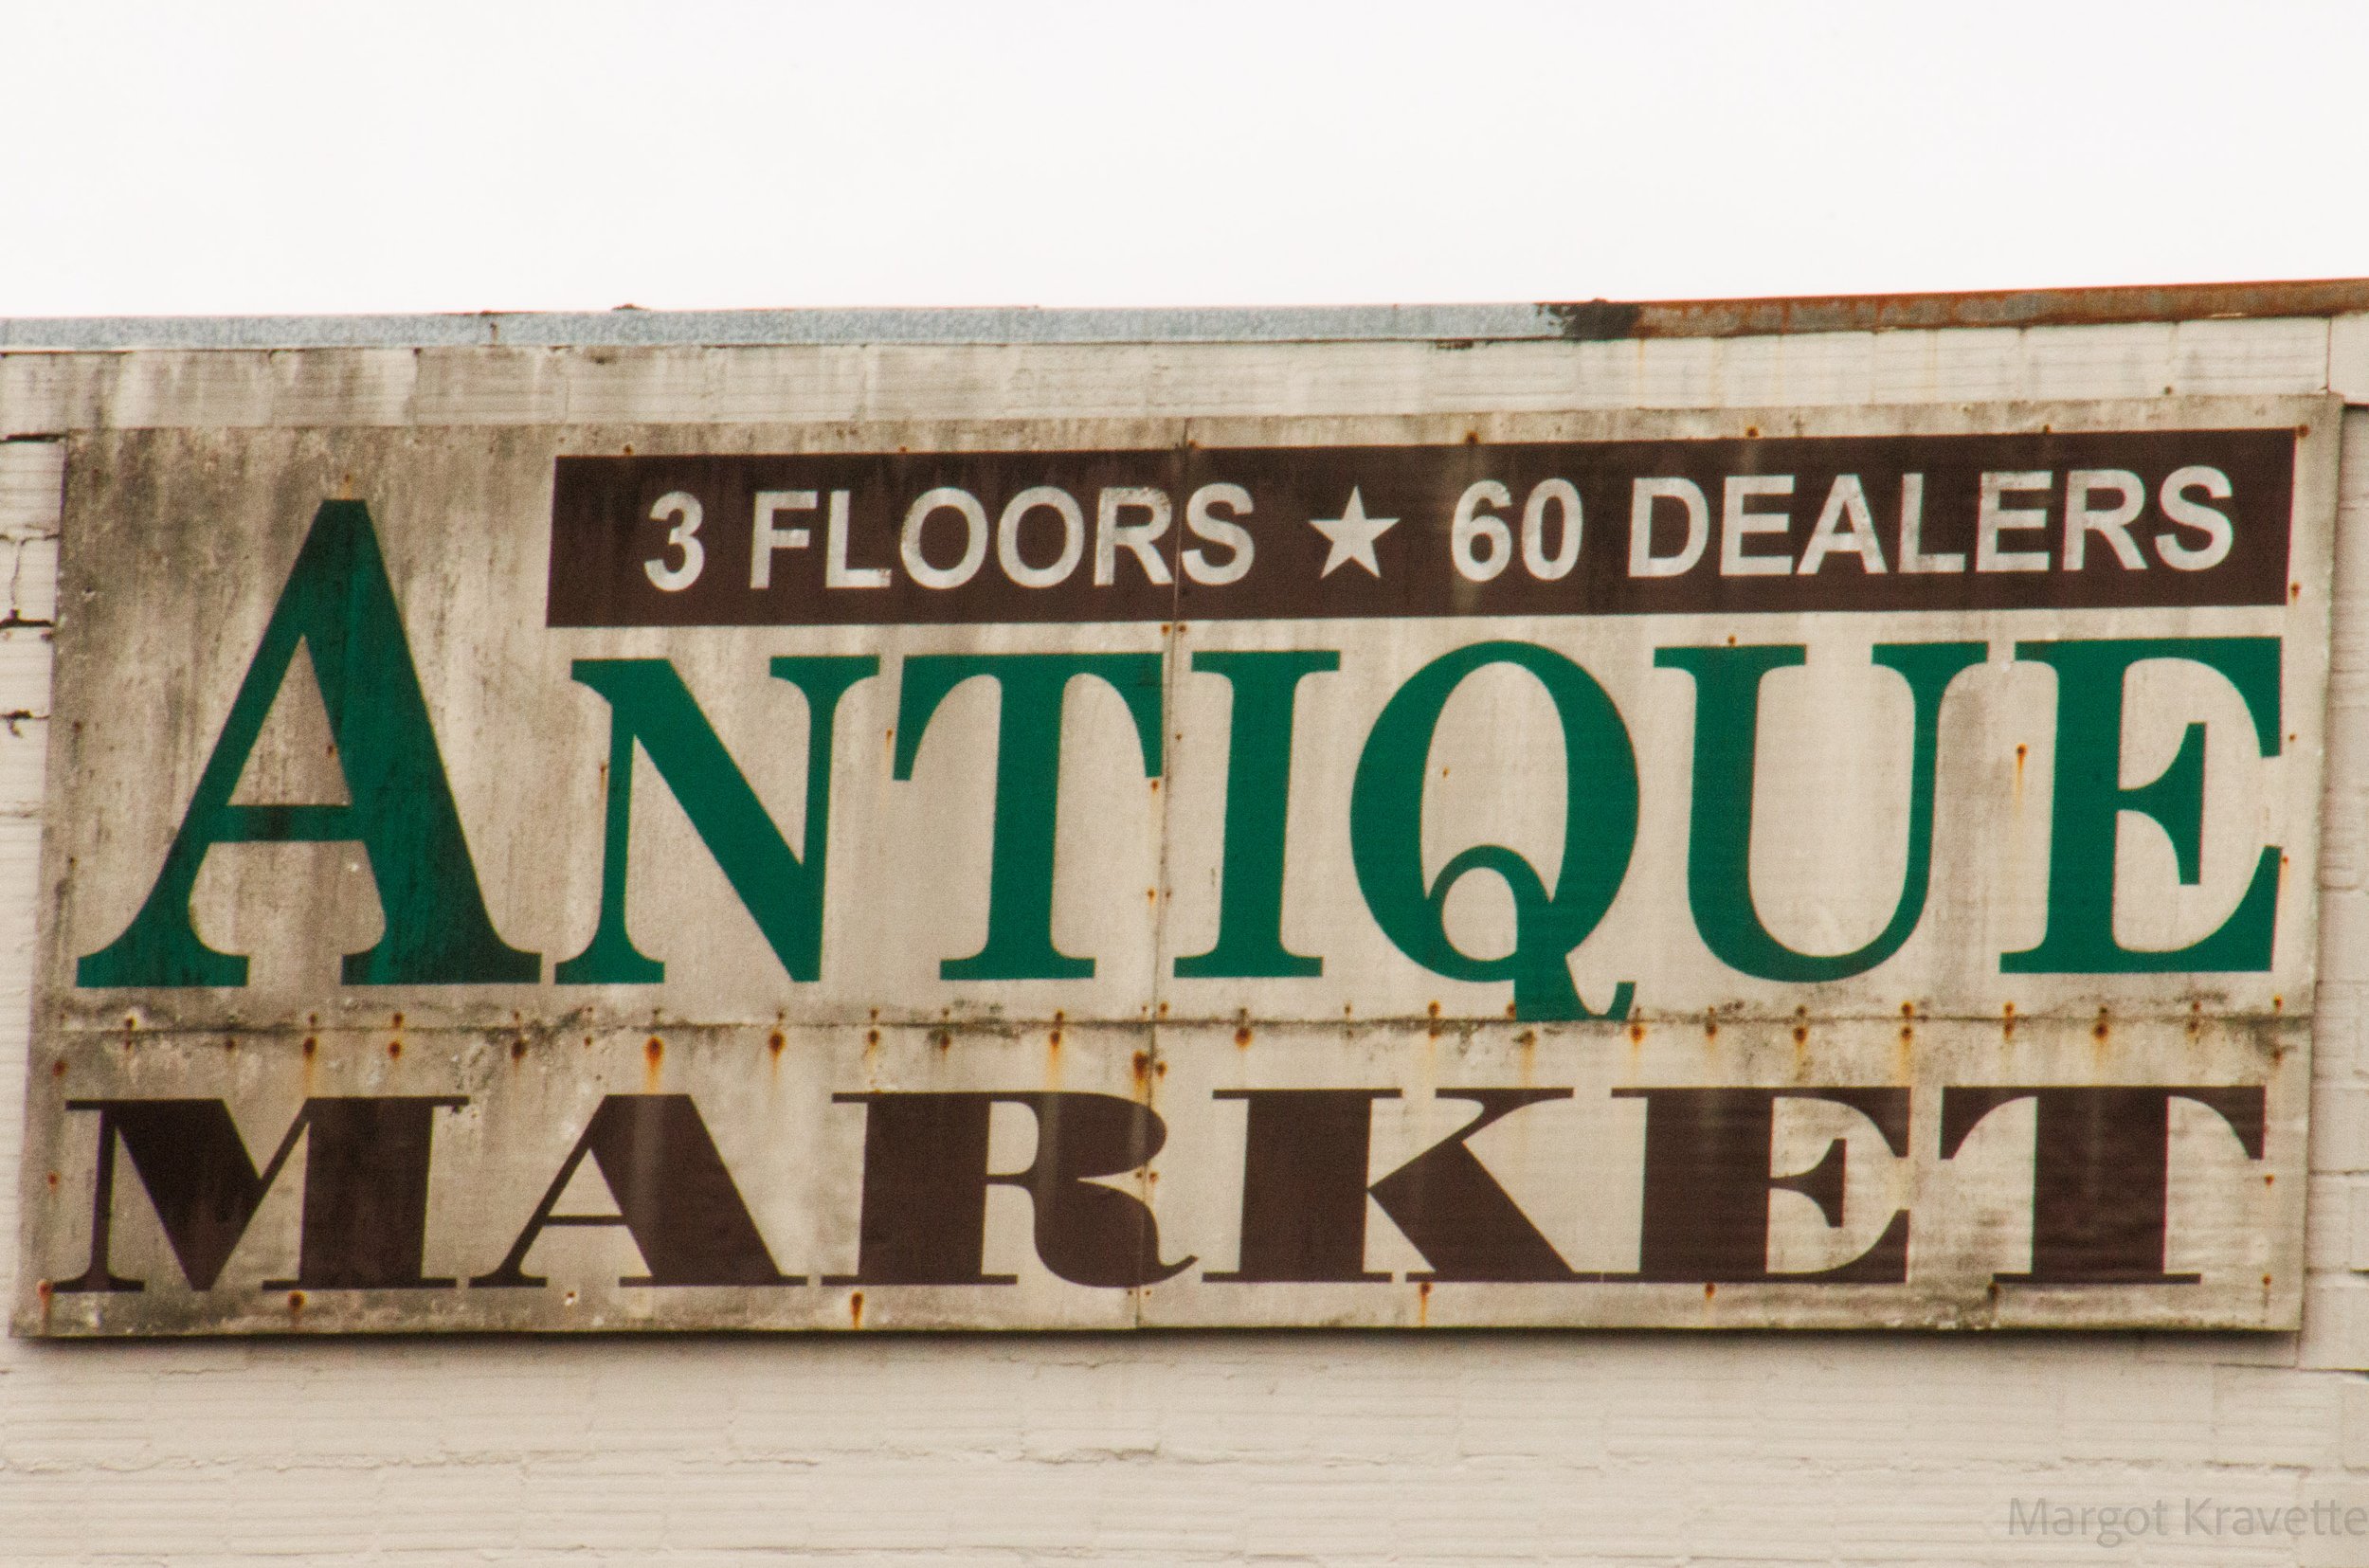 Antiques - Antique Market-4067.jpg